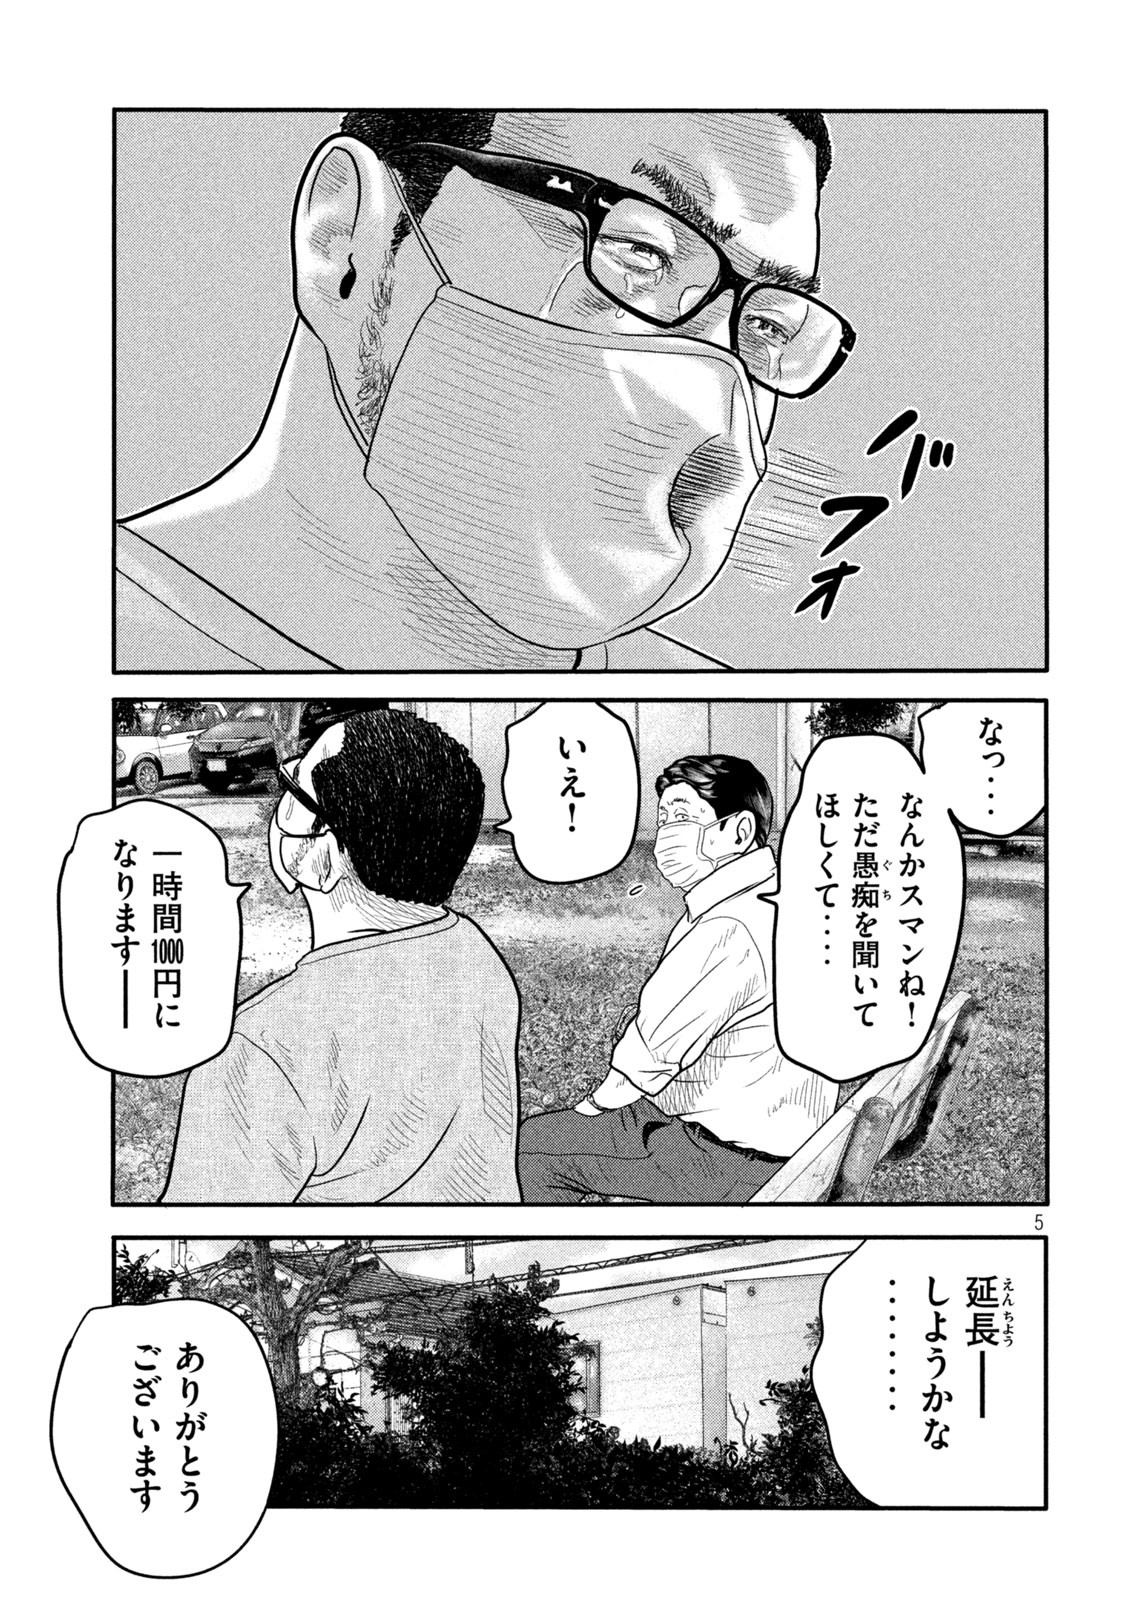 ザ・ファブル The Second Contact 第2話 - Page 5